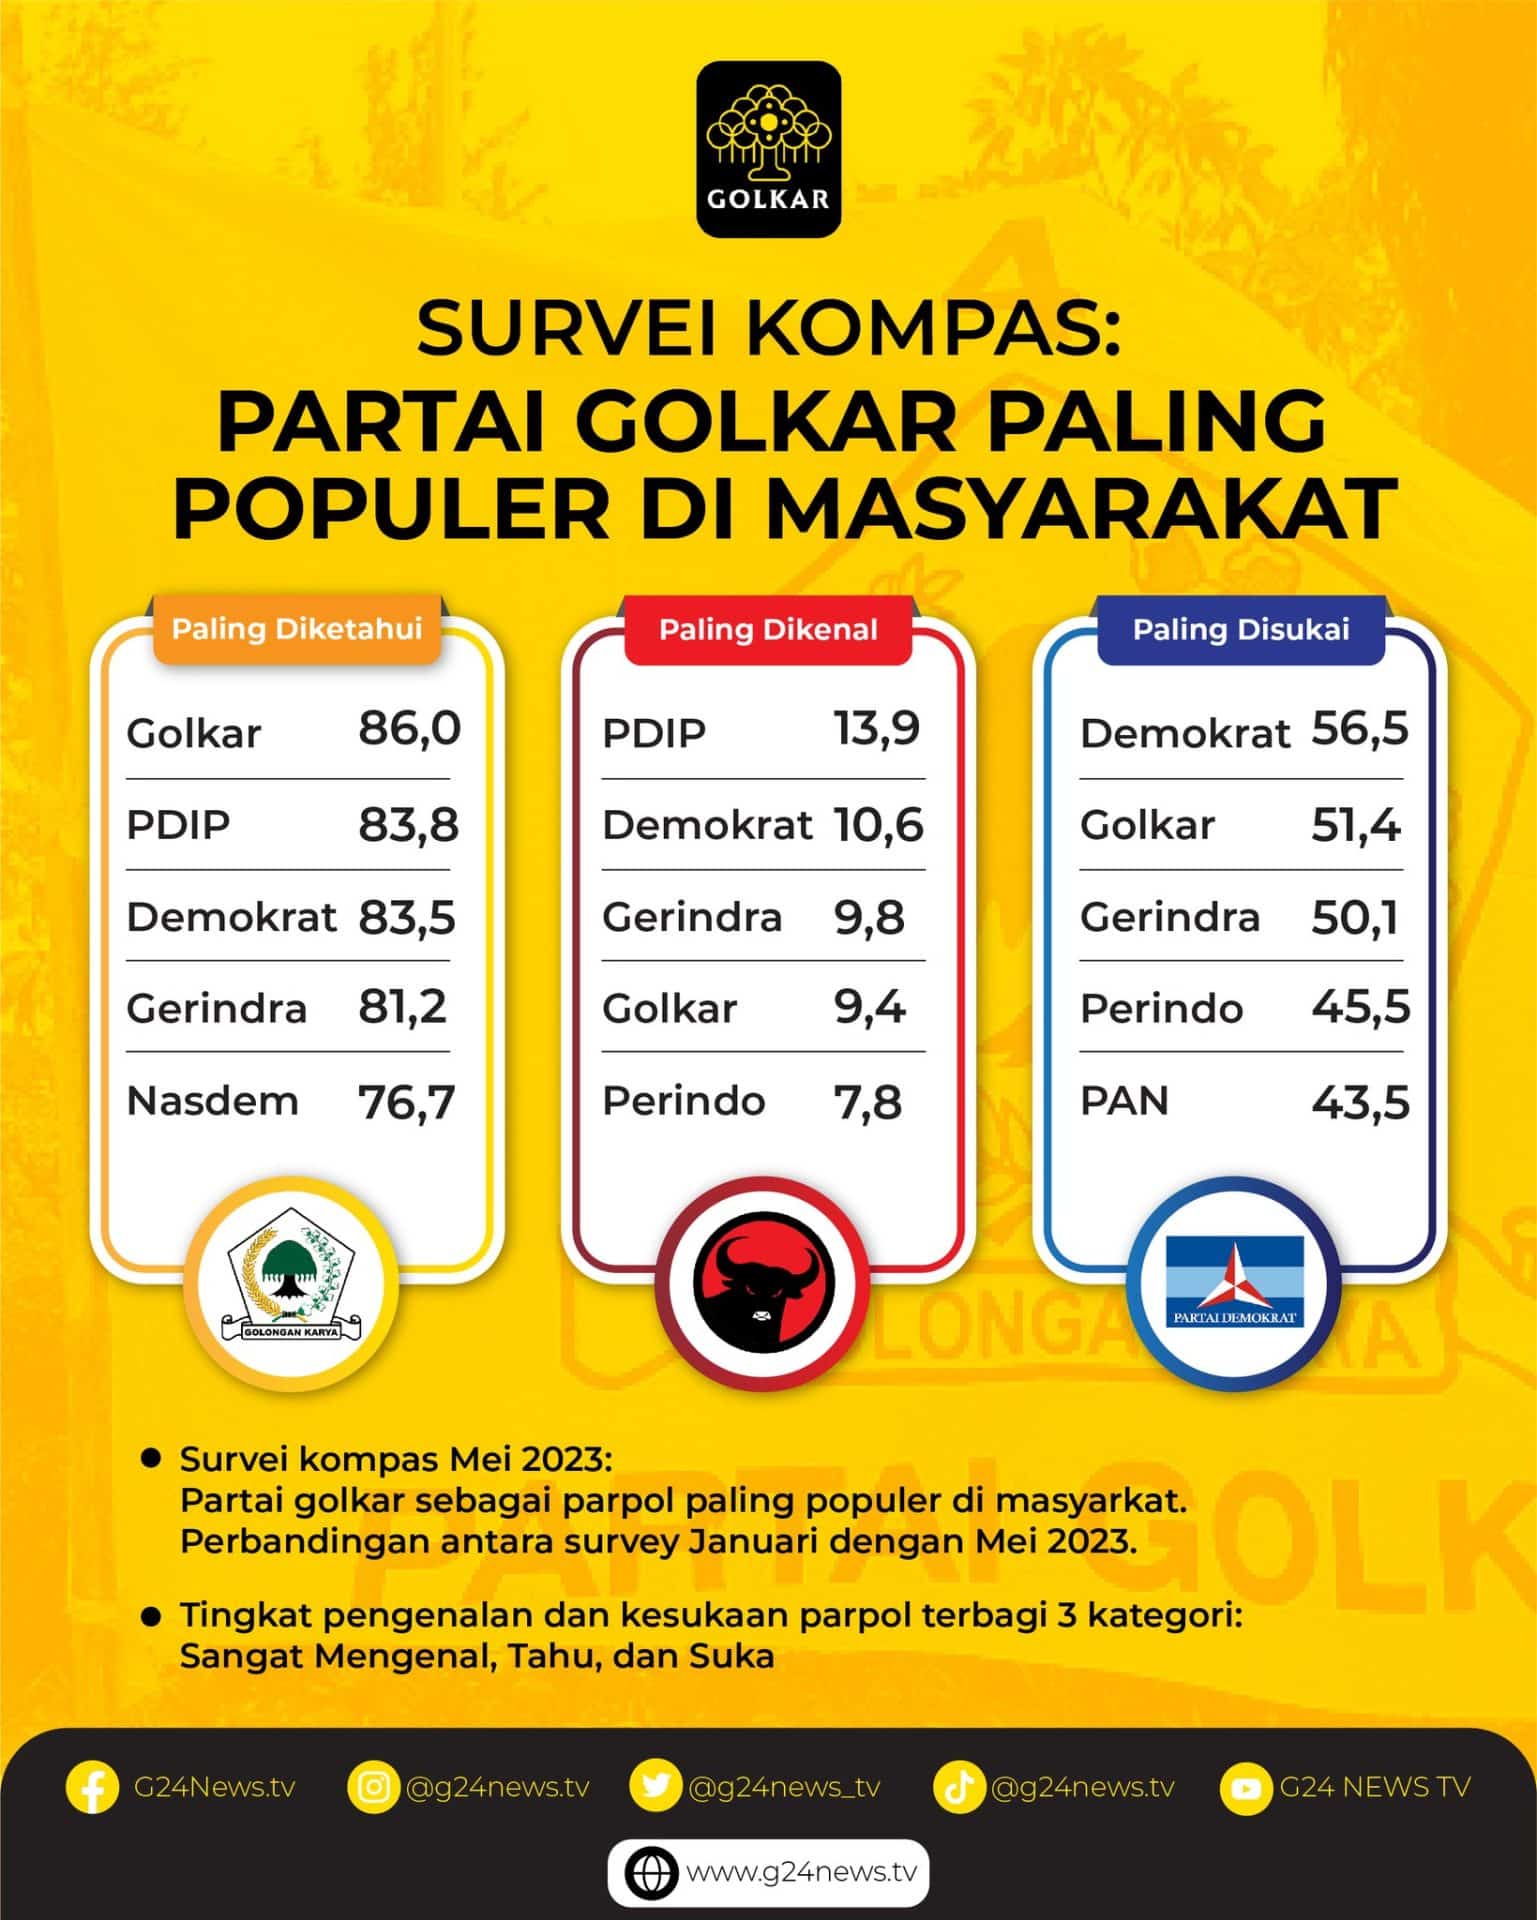 Infografis hasil survei Litbang Kompas golkar dengan popularitas nomor 1